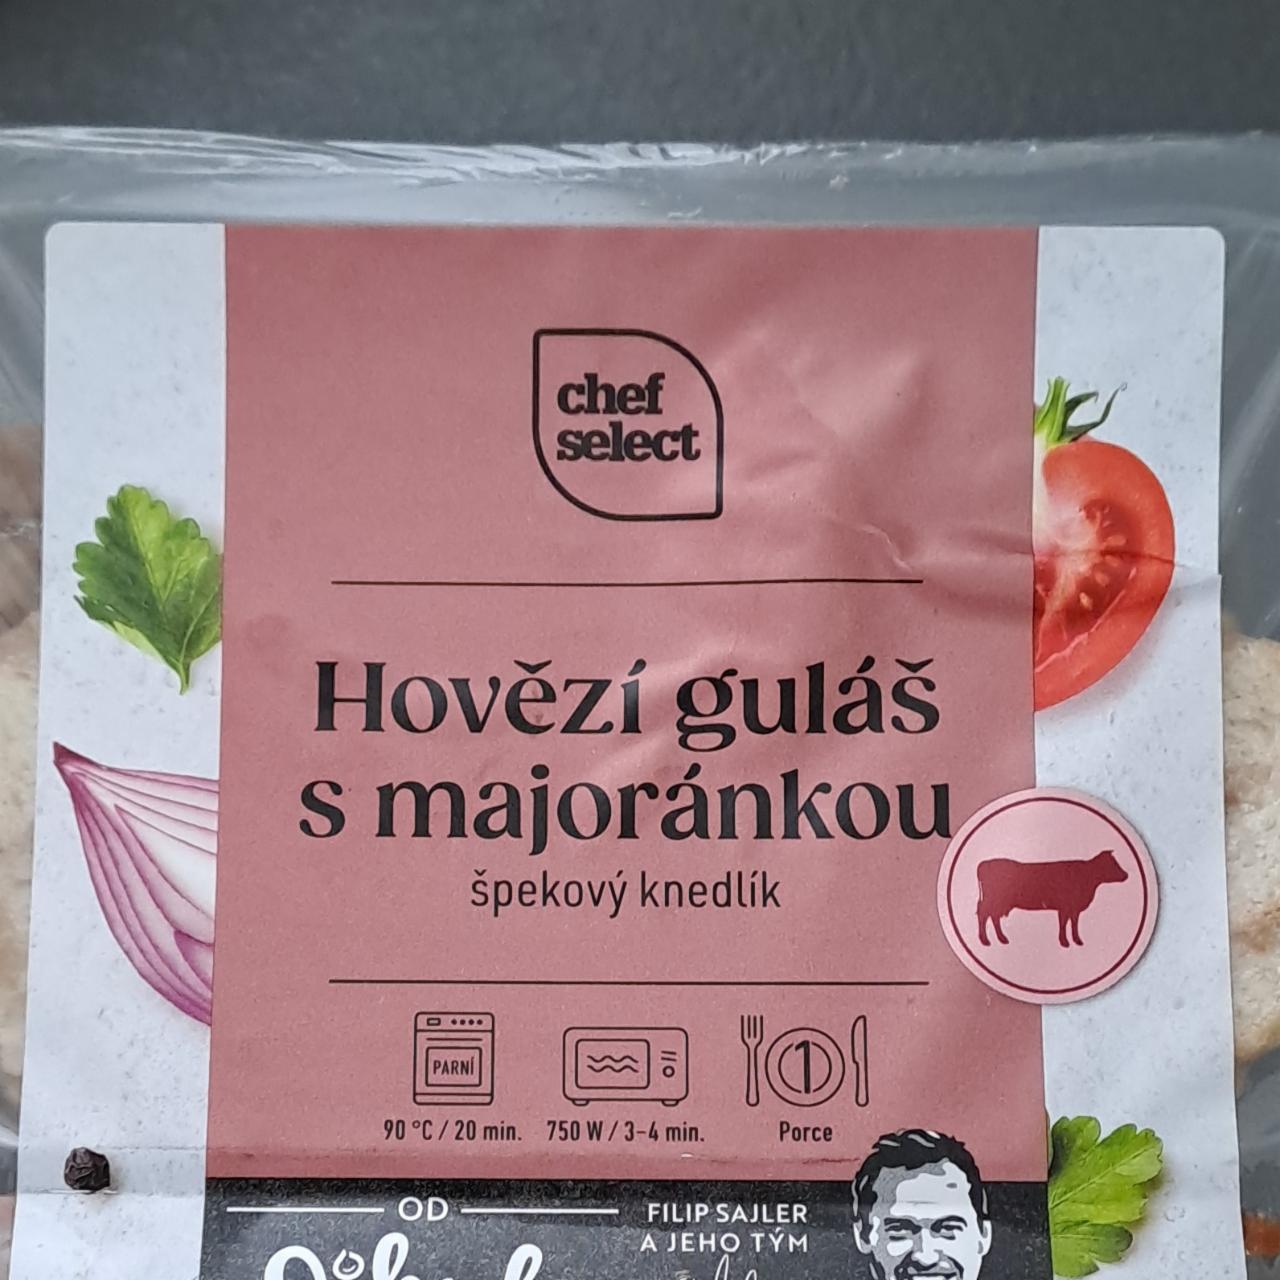 Fotografie - Hovězí guláš s majoránkou špekový kendlík Chef Select